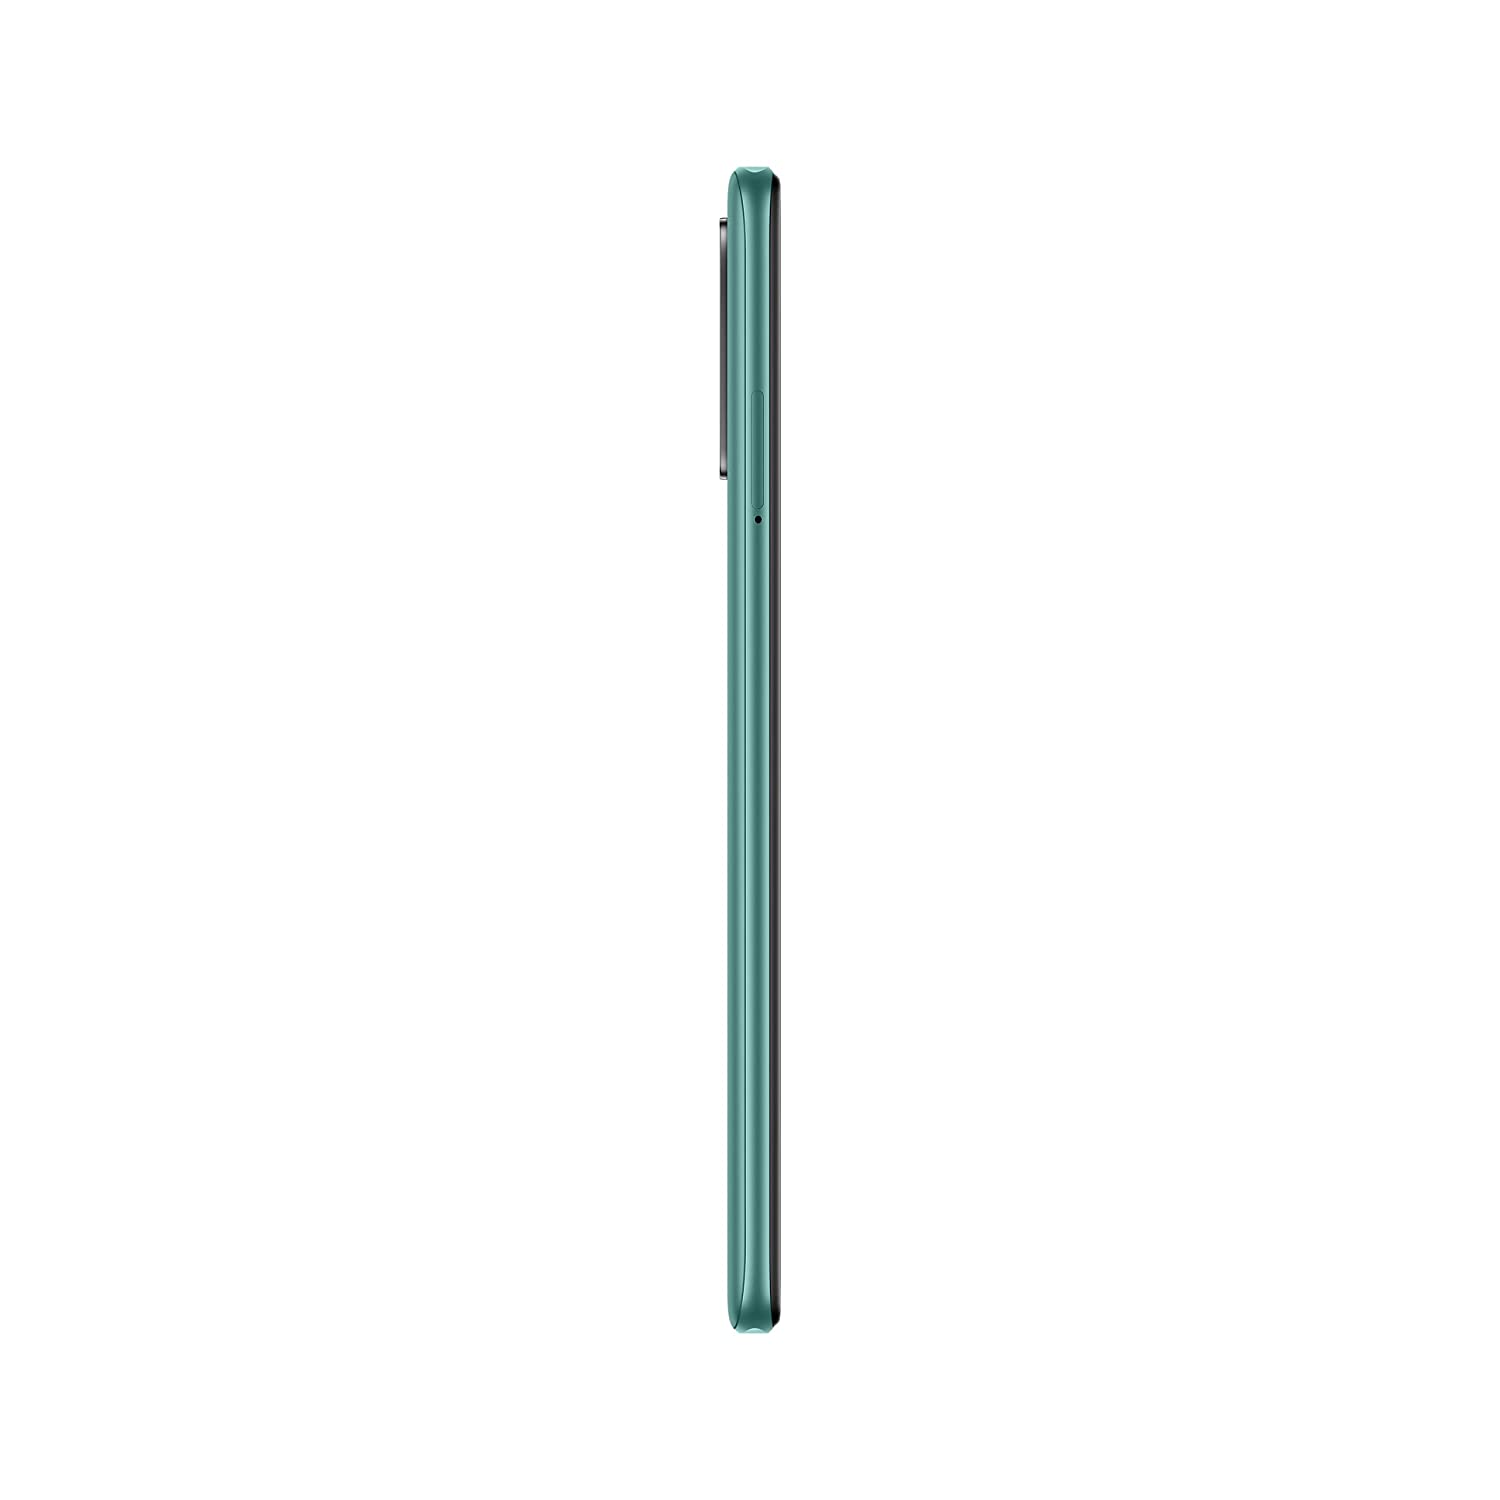 REDMI Note 10T 5G (Mint Green, 128 GB)  (6 GB RAM)